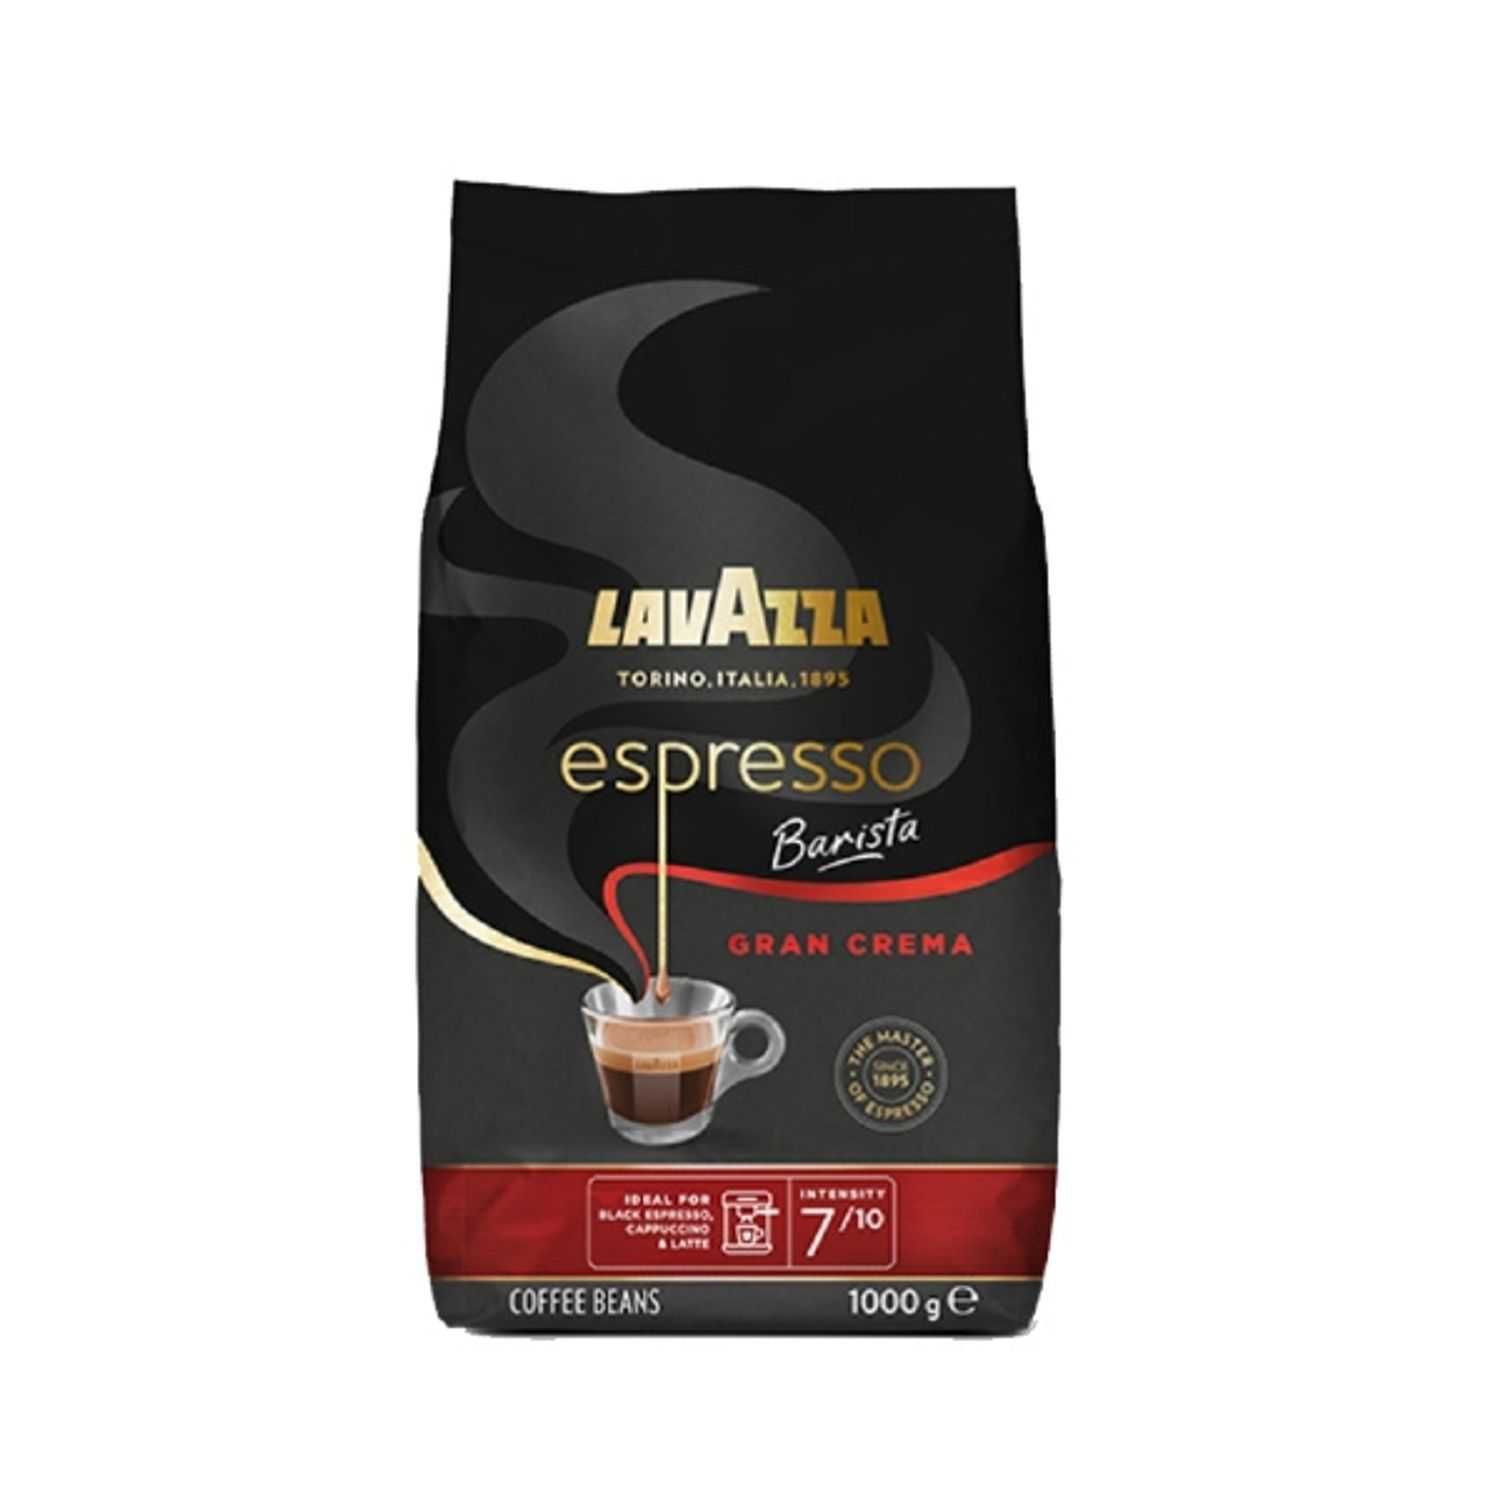 Lavazza Espresso Barista Gran Crema cafea boabe 1kg